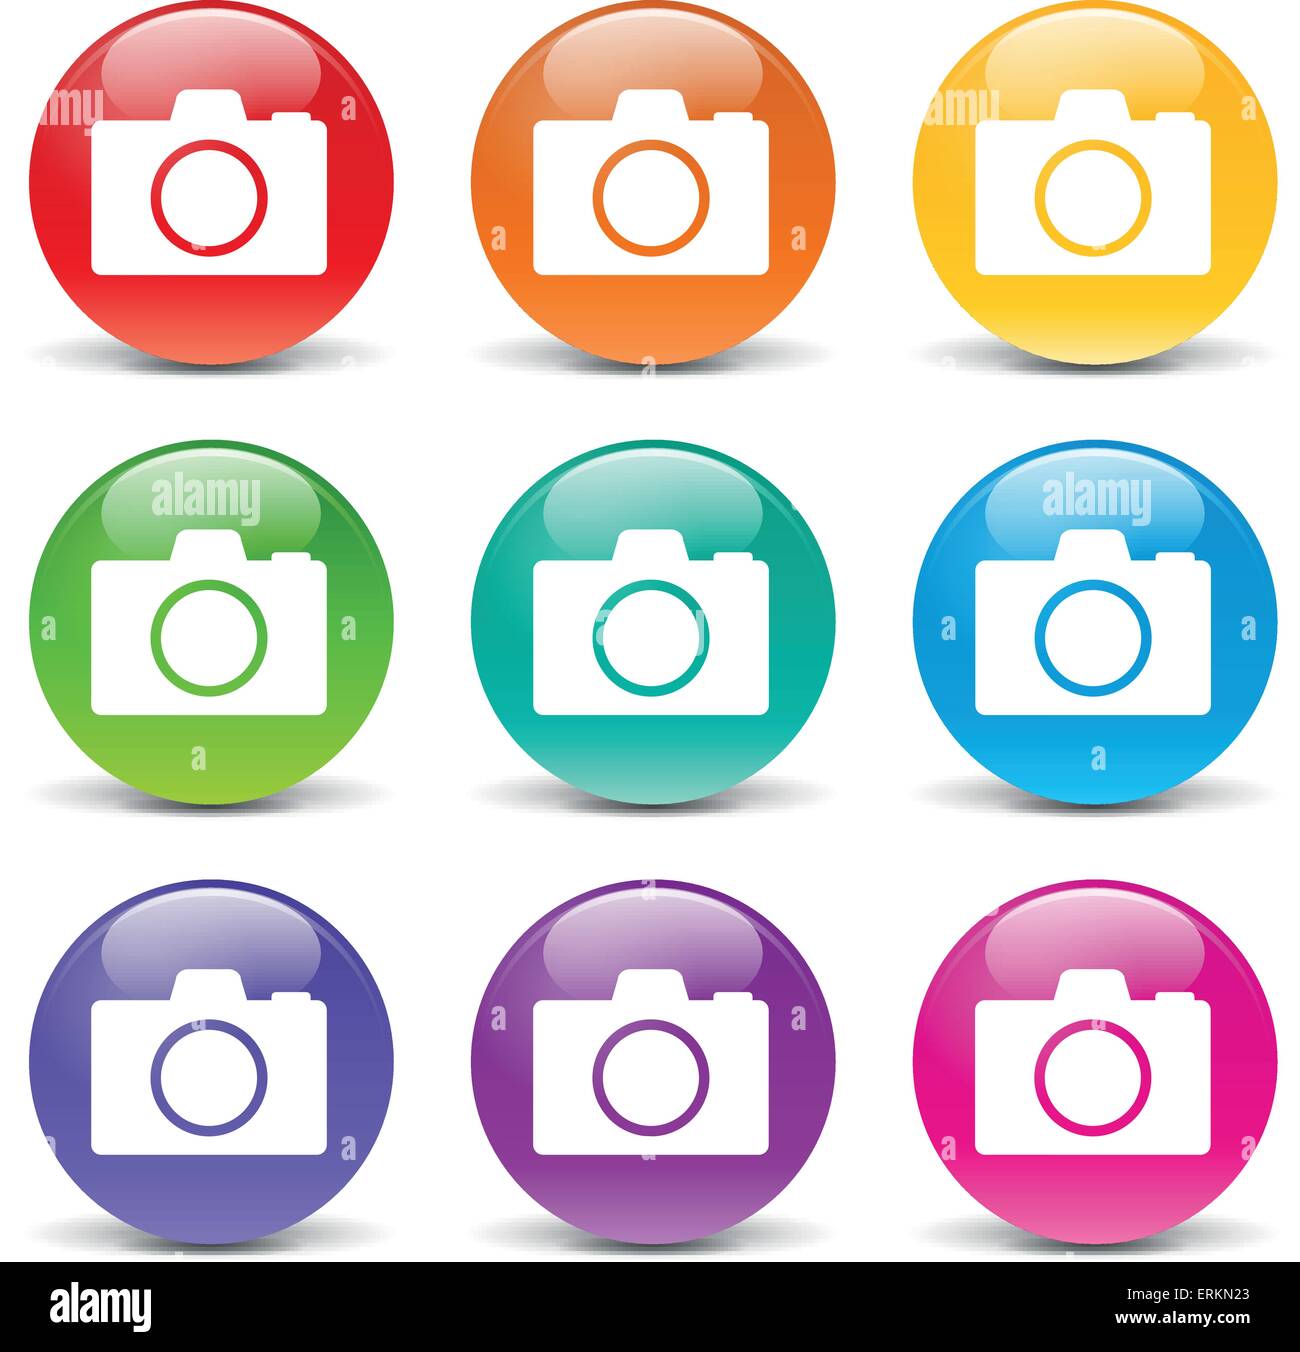 Illustrazione Vettoriale delle icone della telecamera su sfondo bianco Illustrazione Vettoriale